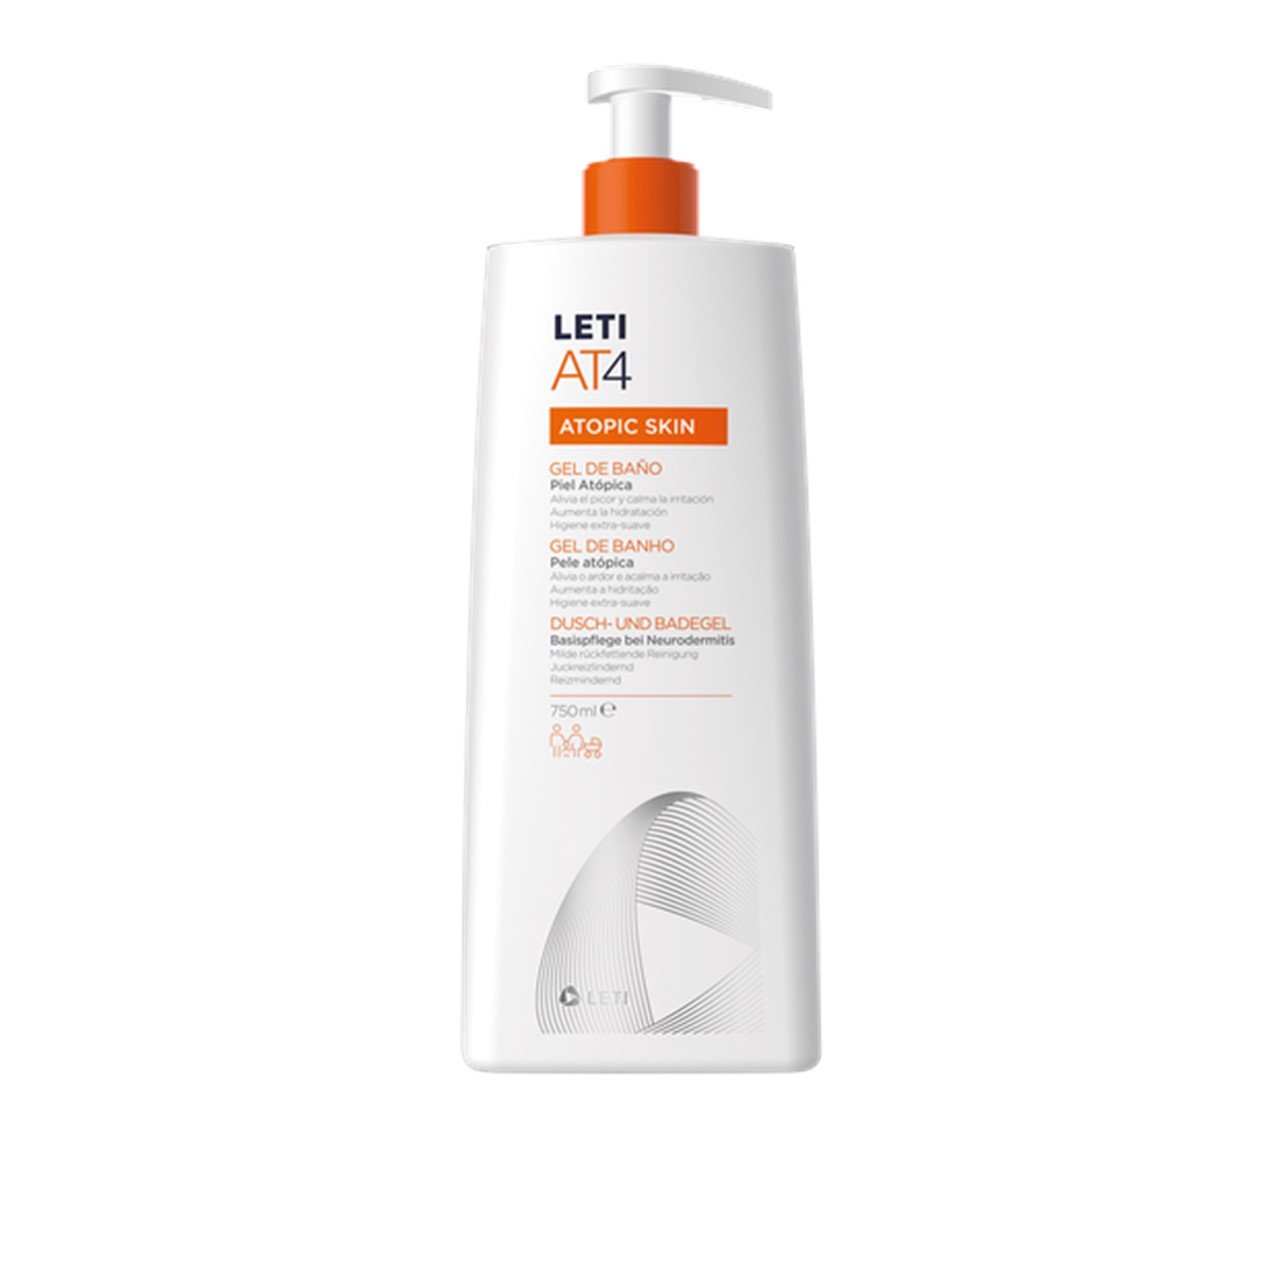 LETI AT4 Atopic Skin Bath Gel 750ml (25.36fl oz)